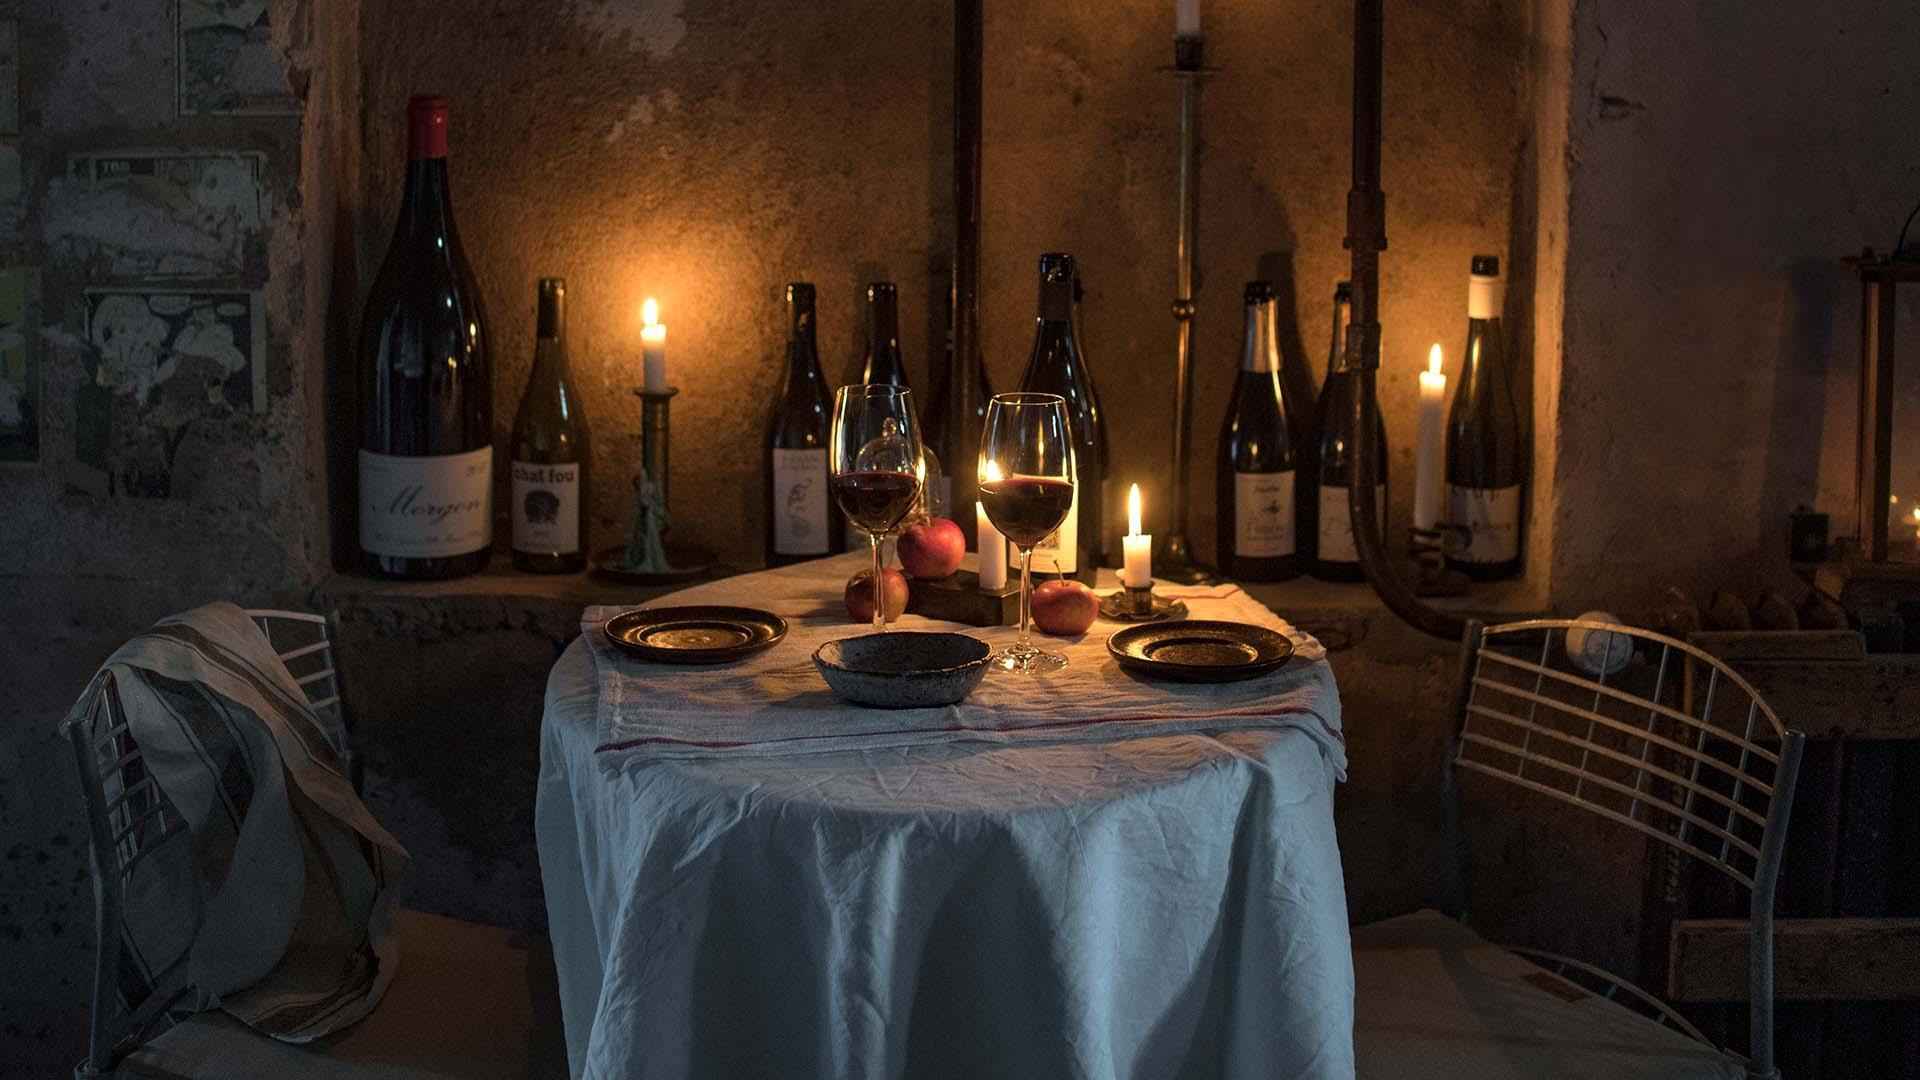 Ein Tisch für zwei Personen mit einer weißen Tischdecke, Tellern und zwei Gläsern gefüllt mit Rotwein. Die Wand ist mit leeren Weinflaschen und brennenden Kerzen geschmückt.